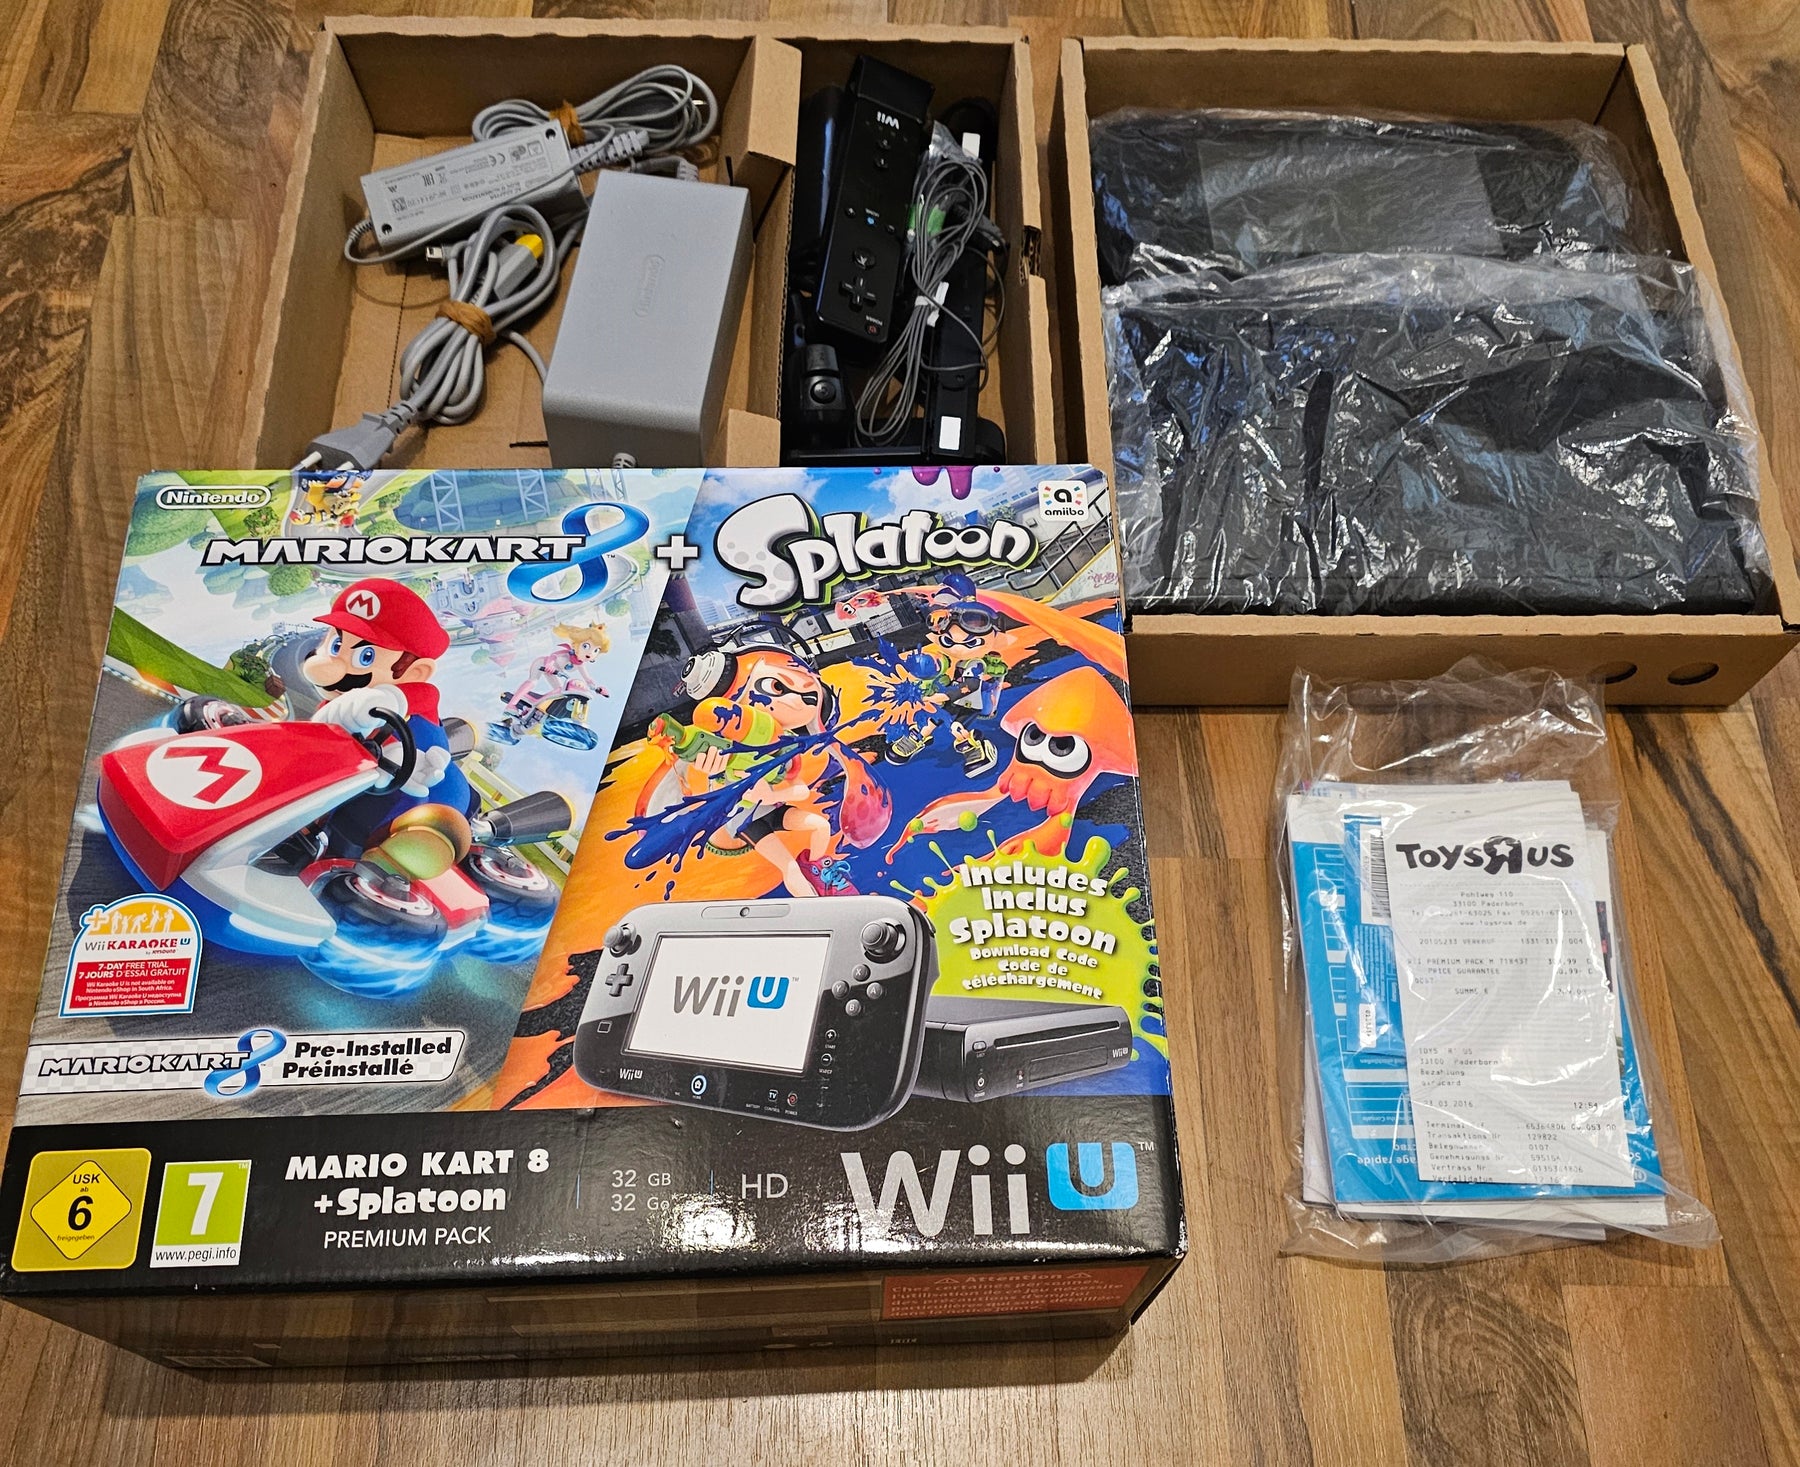 Nintendo Wii U Premium Pack 32GB schwarz inkl Mario Kart 8 vorinstalliert Splatoon DLCCode [Wie Neu]